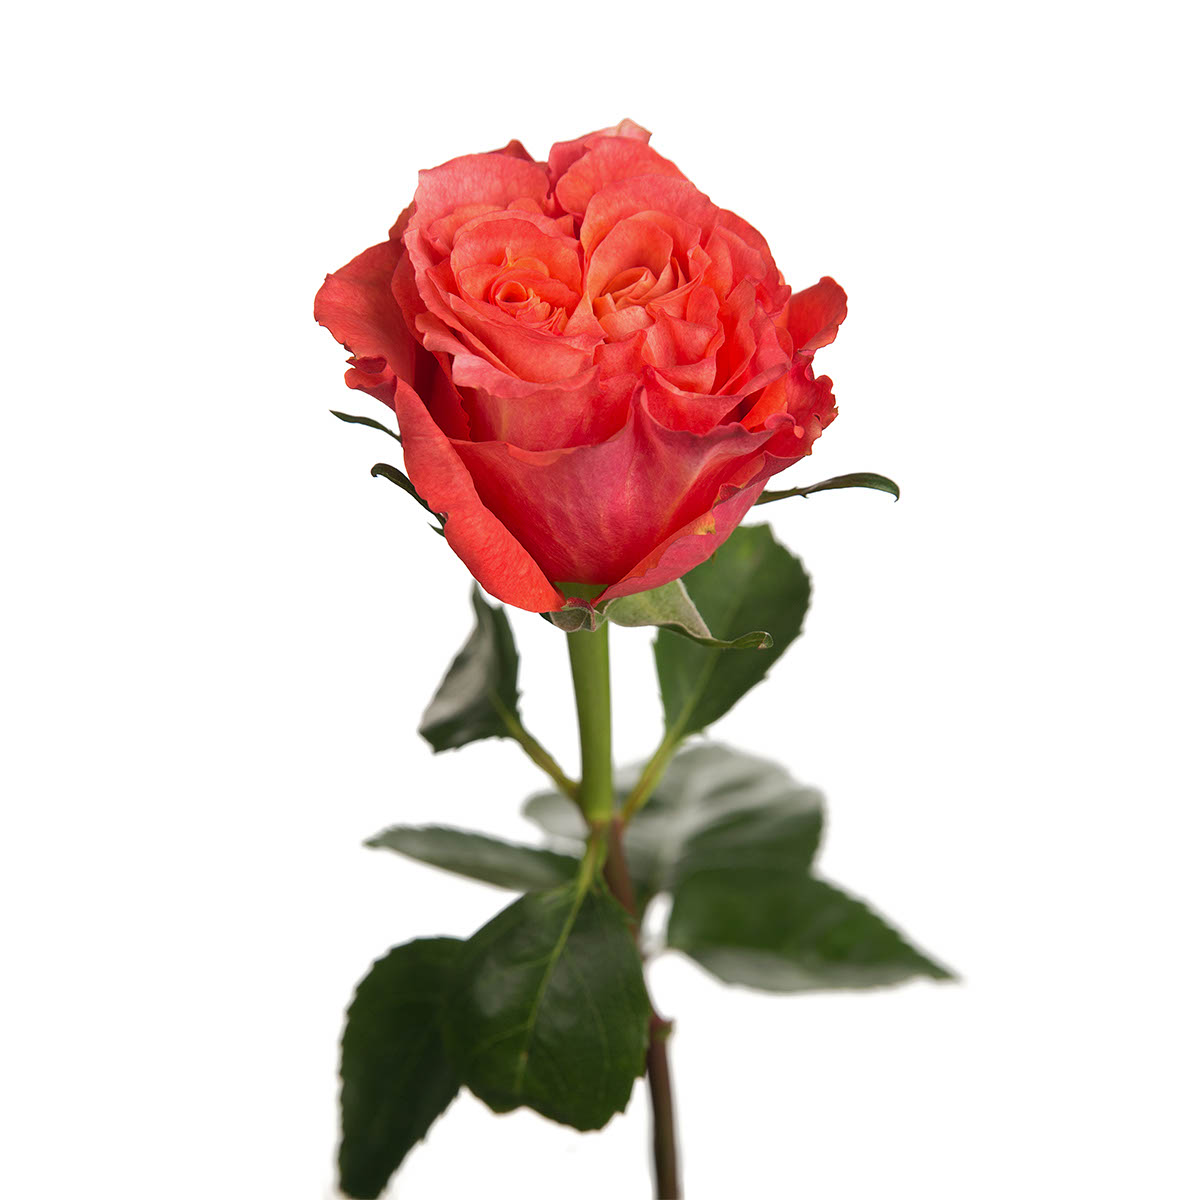 Carabella Garden Rose